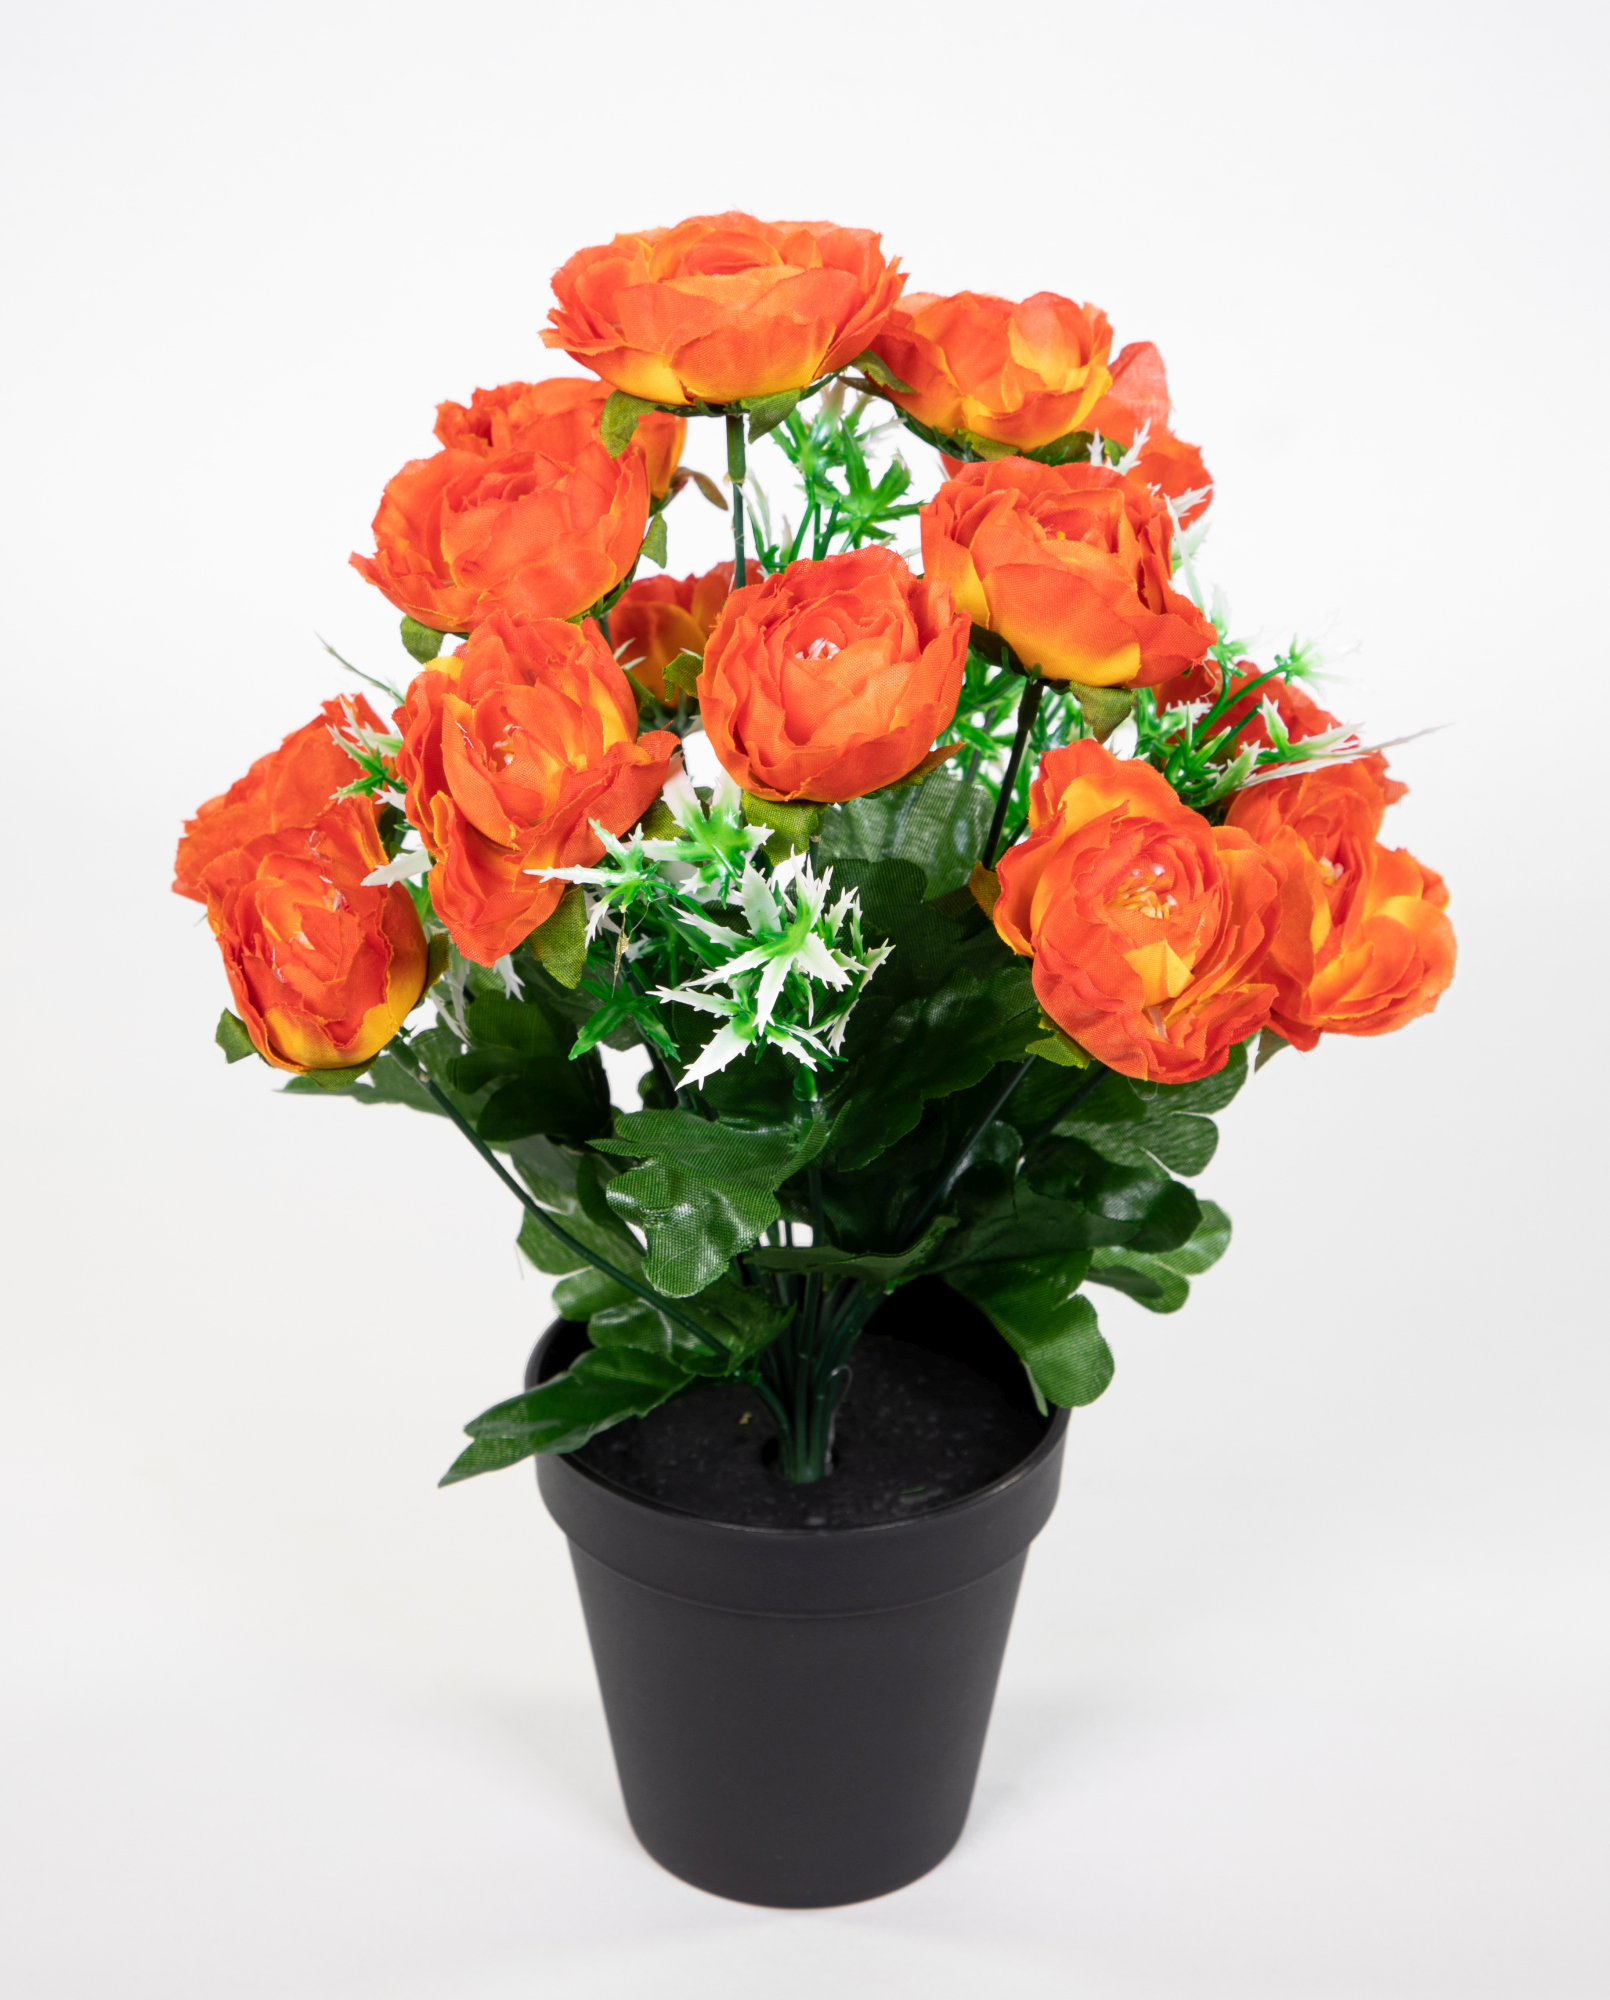 JA Topf künstliche Kunstpflanzen Blumen Ranunkel Ranunkelbusch orange Kunstblumen im 34cm